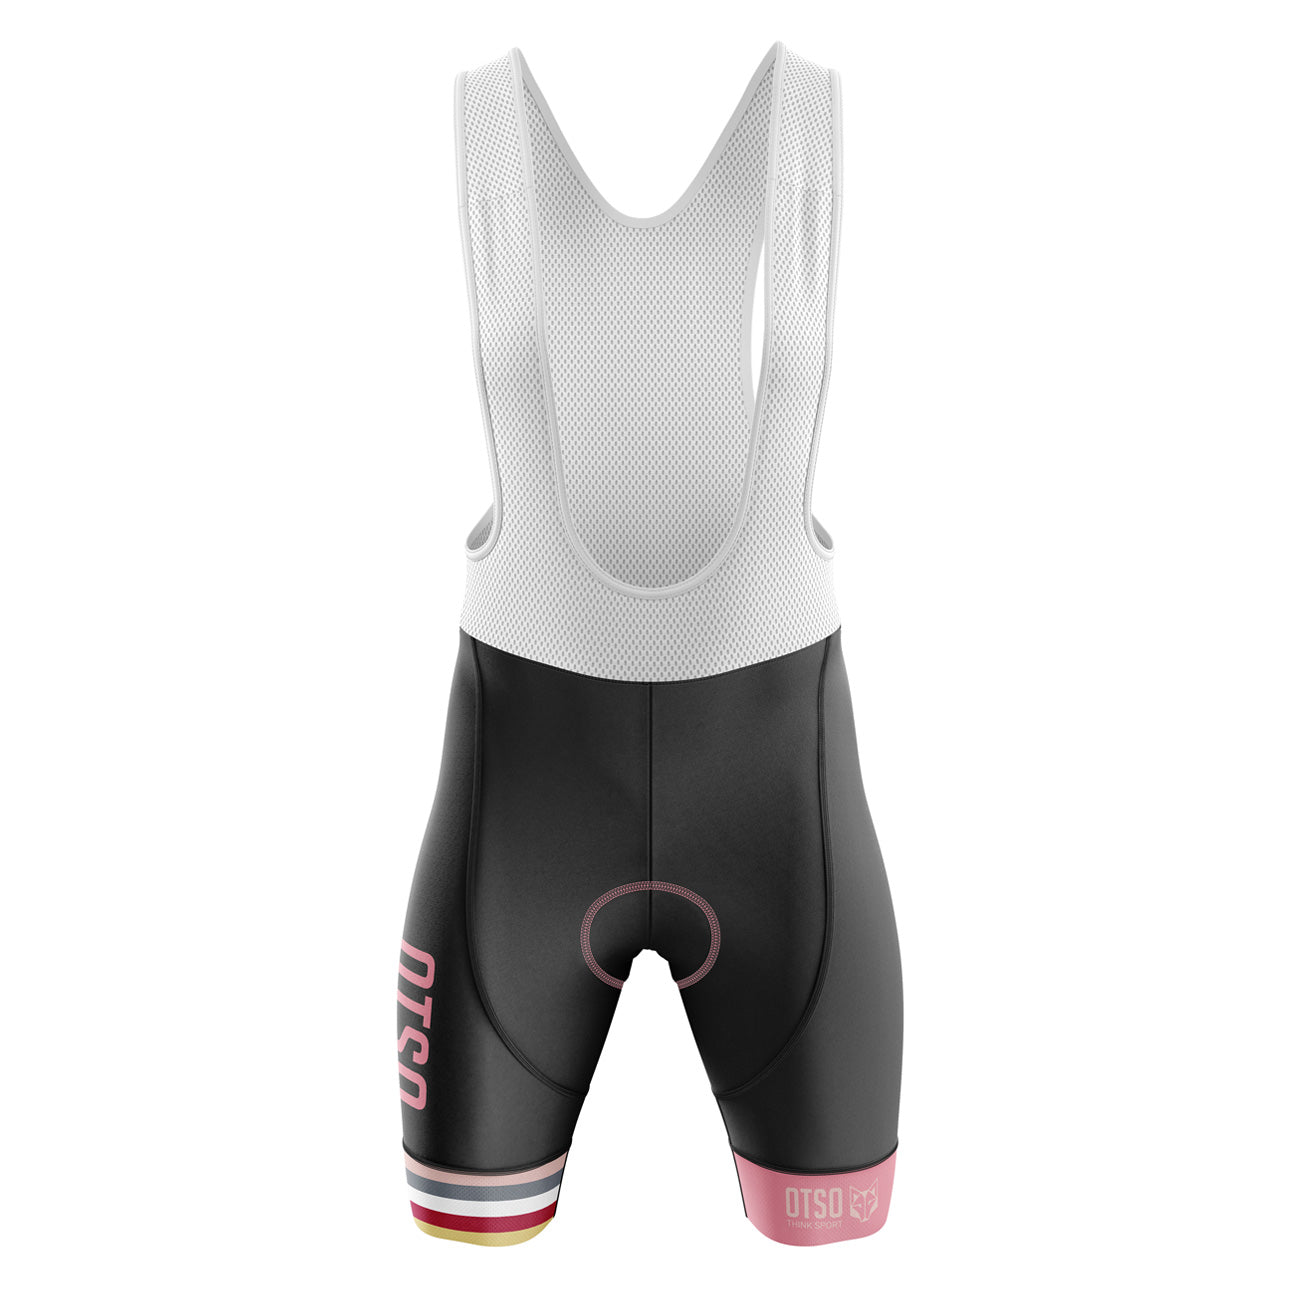 Shorts de ciclismo masculinos listrados rosa coral (Outlet)